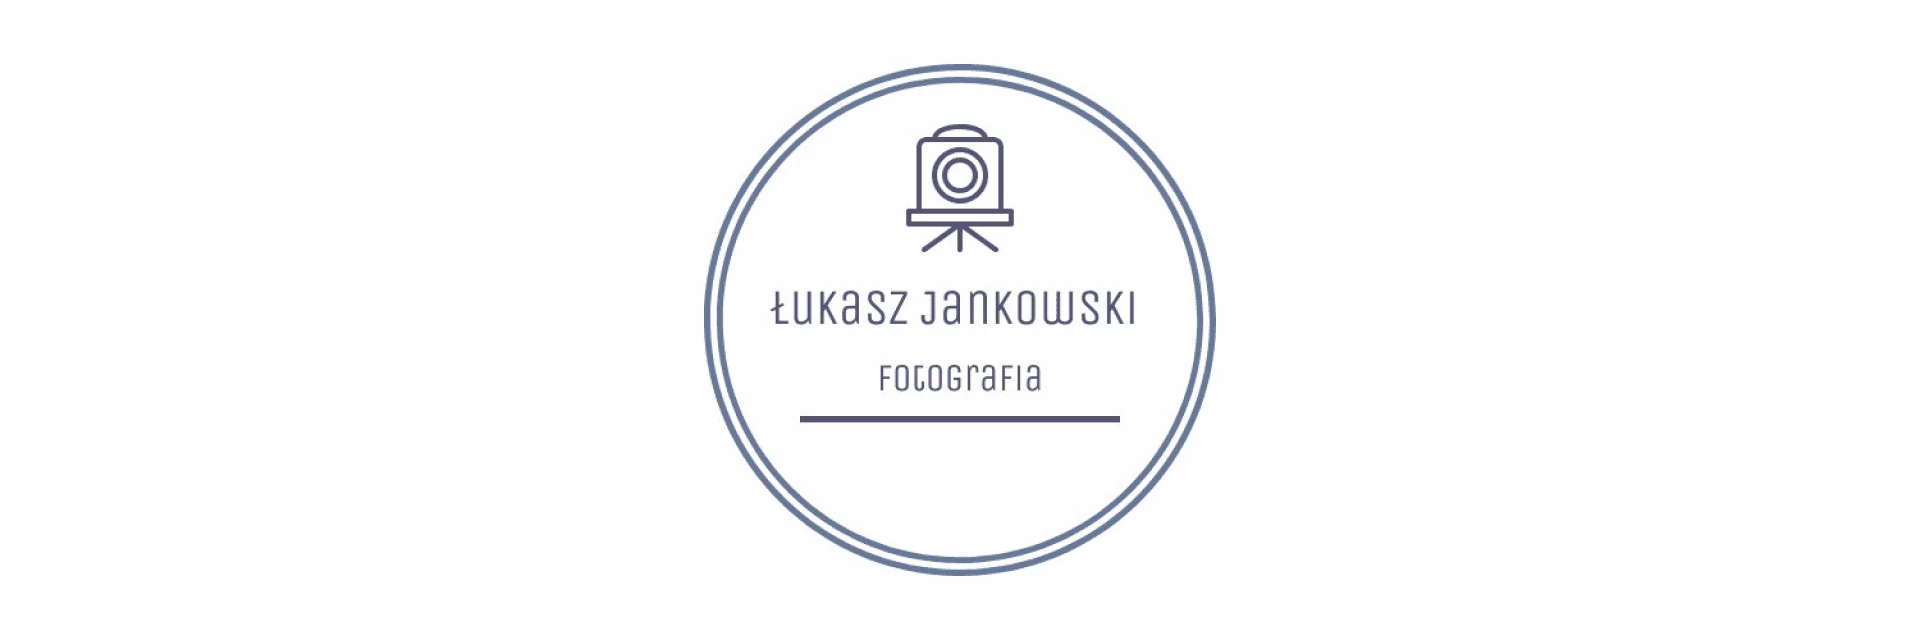 portfolio zdjecia znany fotograf lukasz-jankowski-fotografia